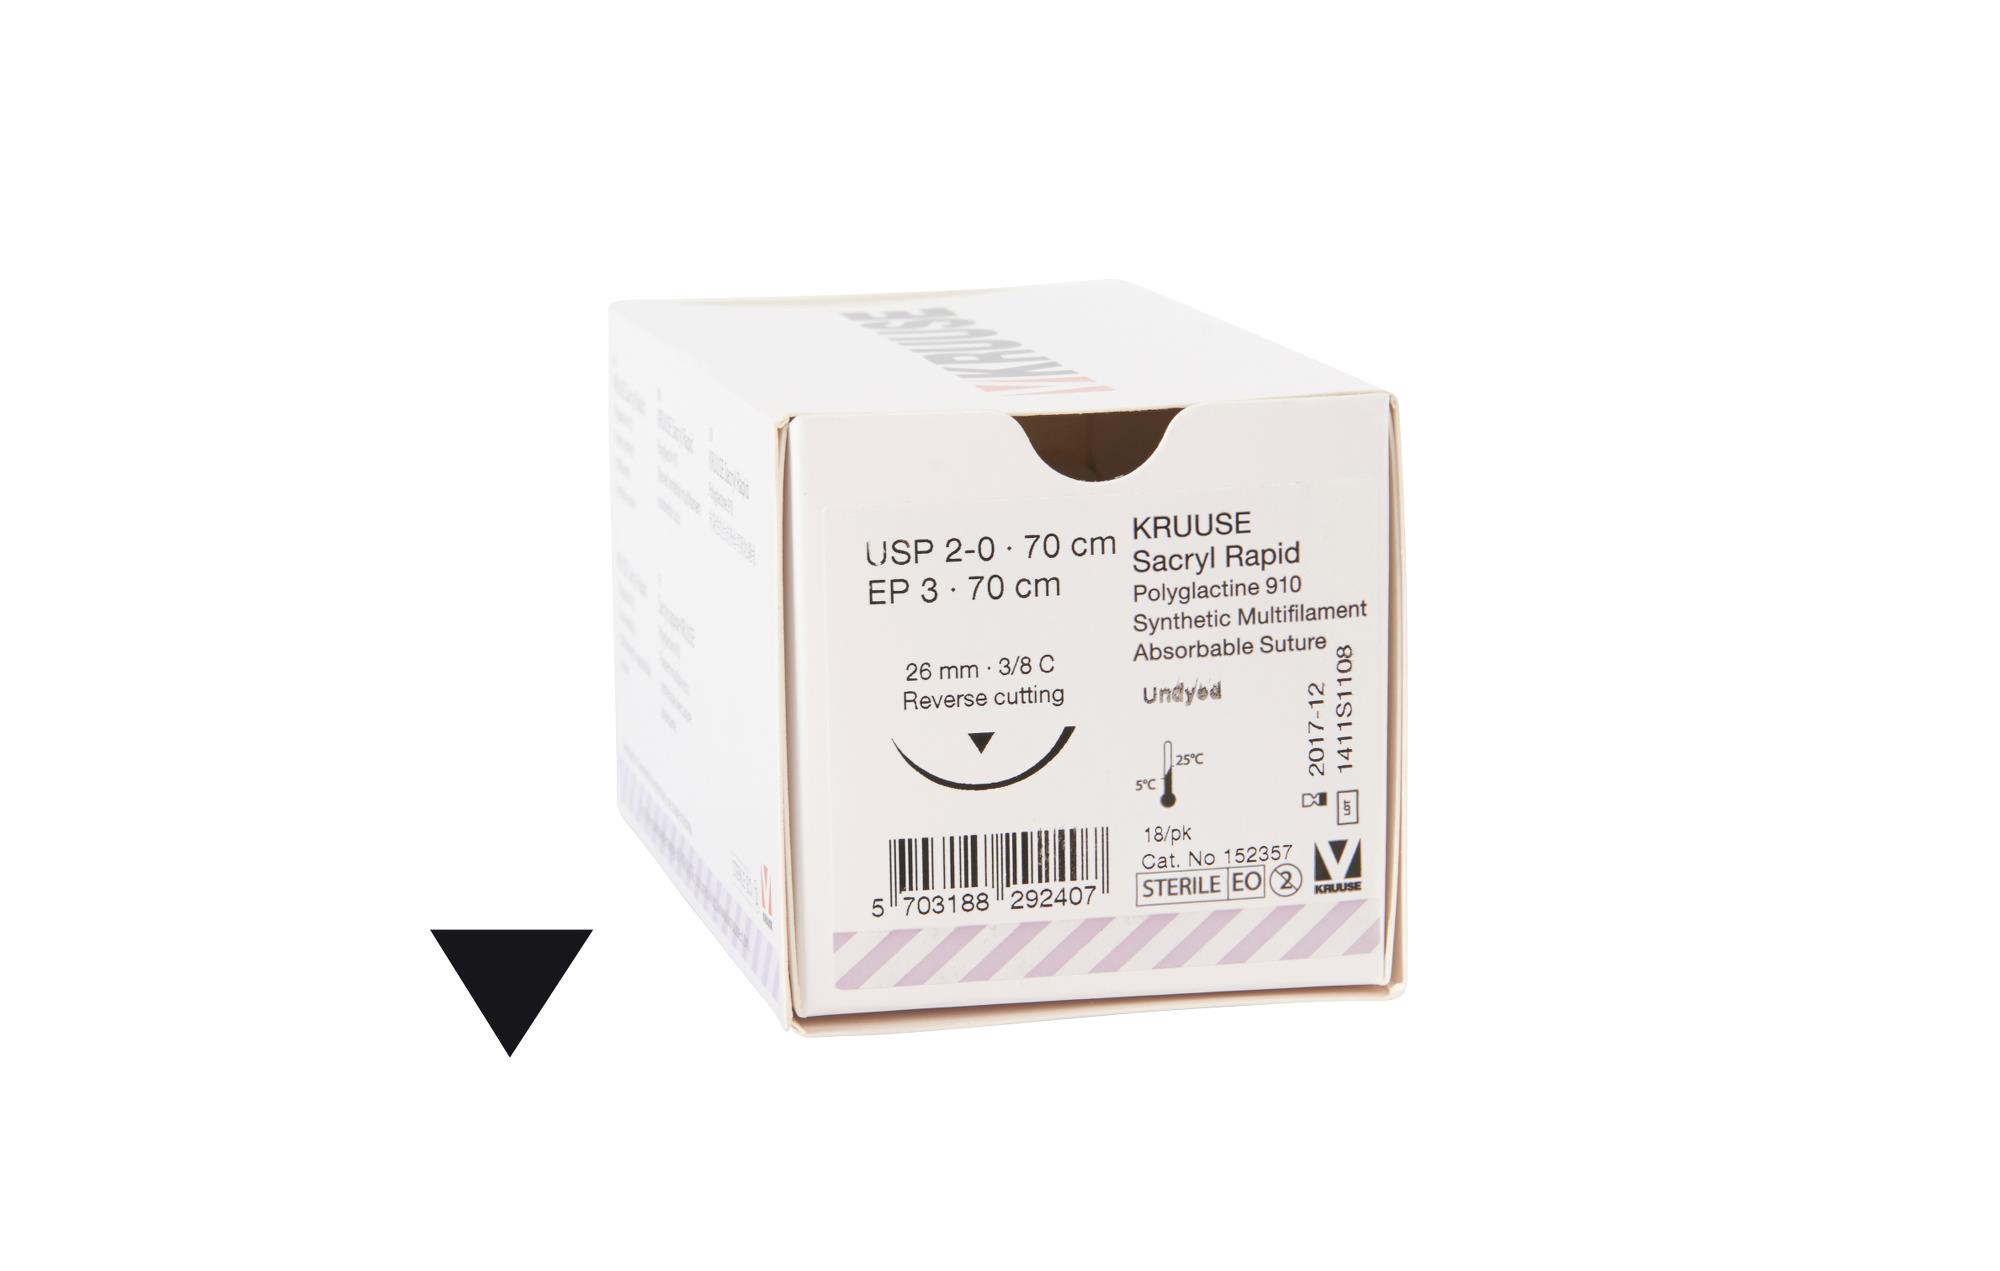 KRUUSE Sacryl Rapid Suture, USP 2-0, 70 cm, undyed, 26 mm needle, 3/8 C, RC, 18/pk